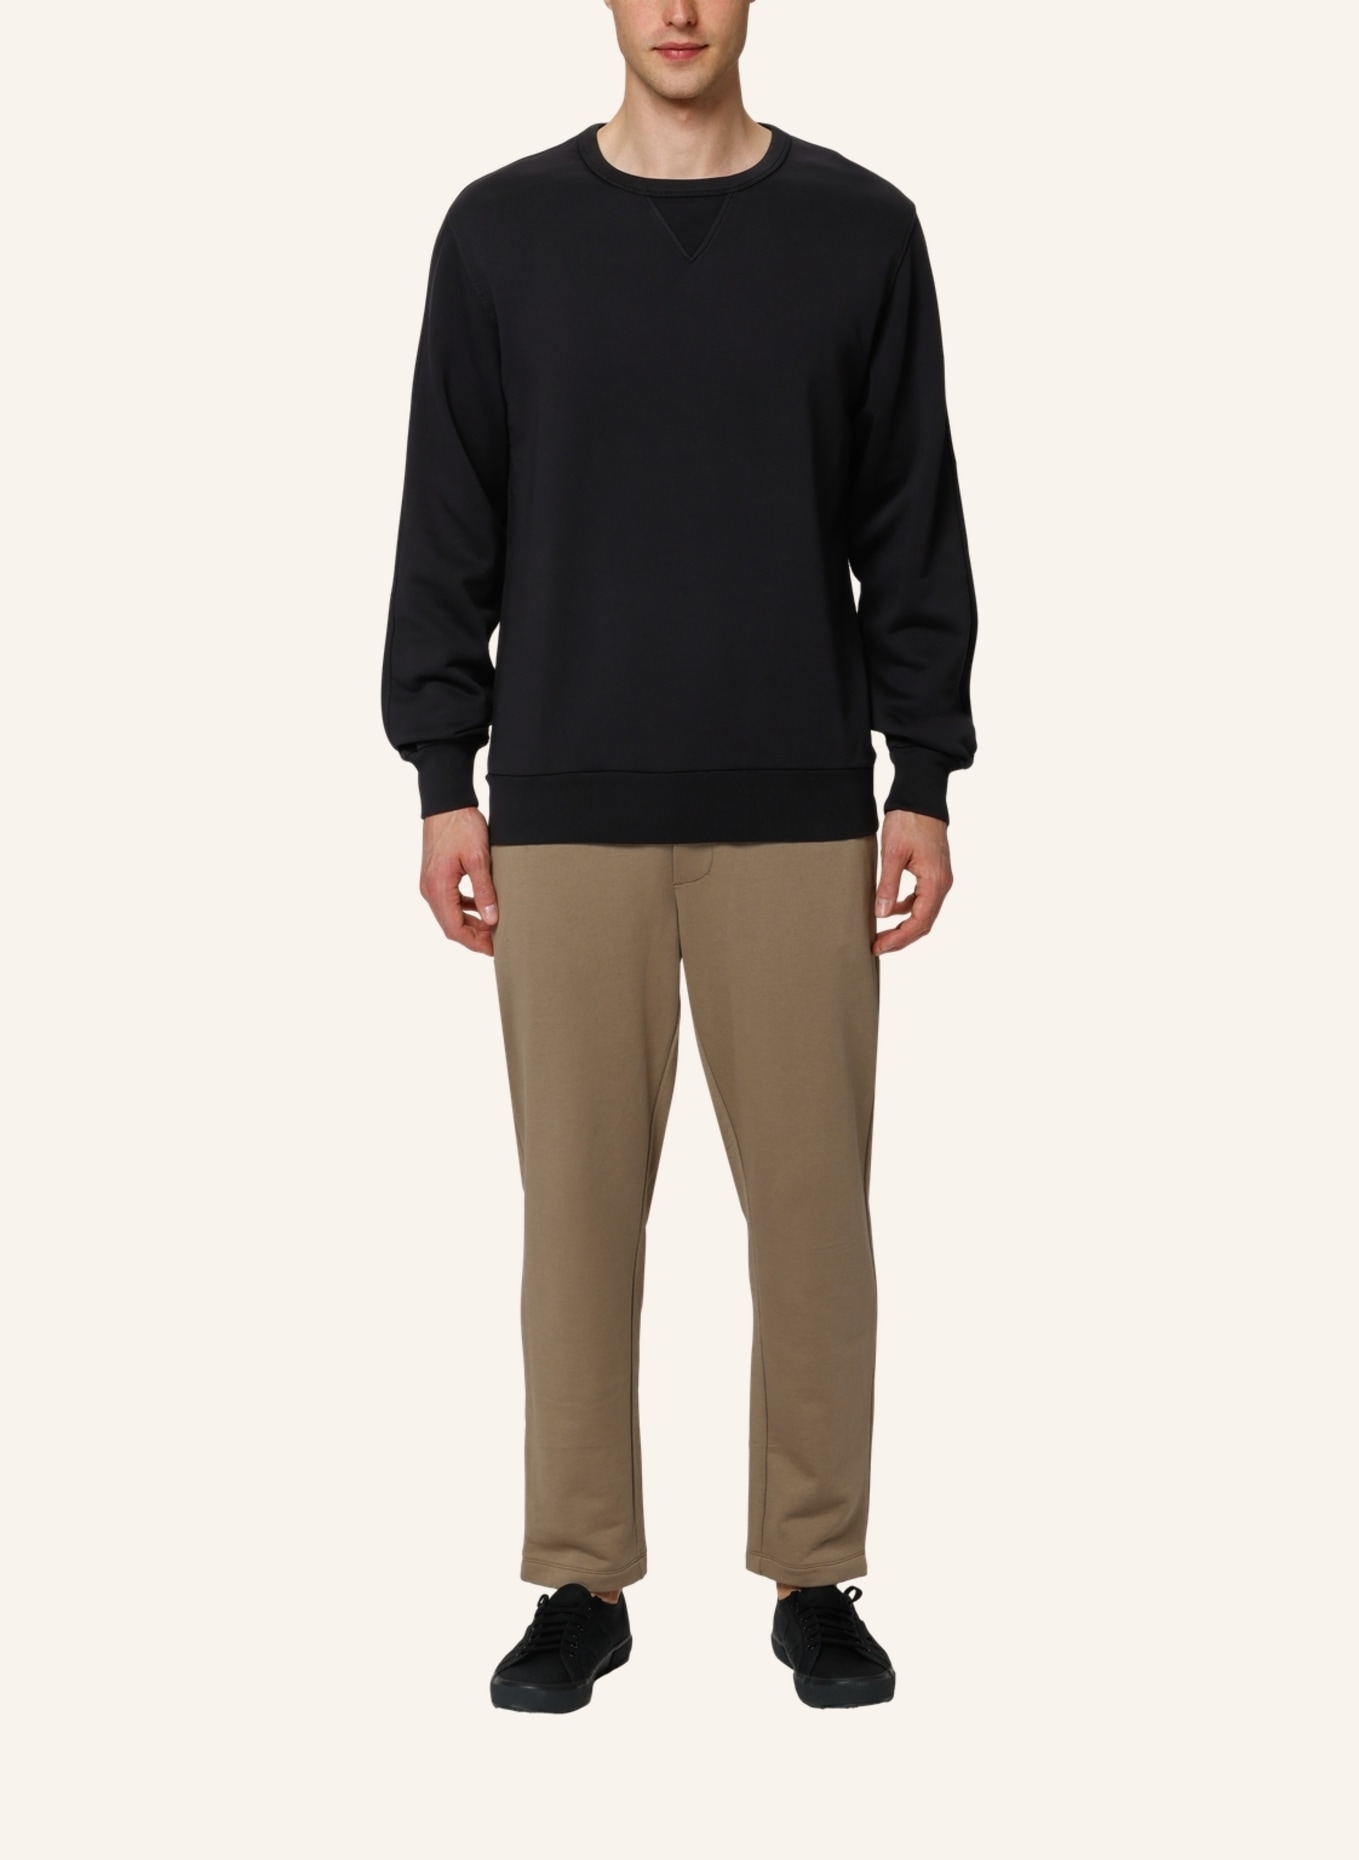 TRUSTED HANDWORK Sweatshirt Regular Fit, Farbe: SCHWARZ (Bild 3)